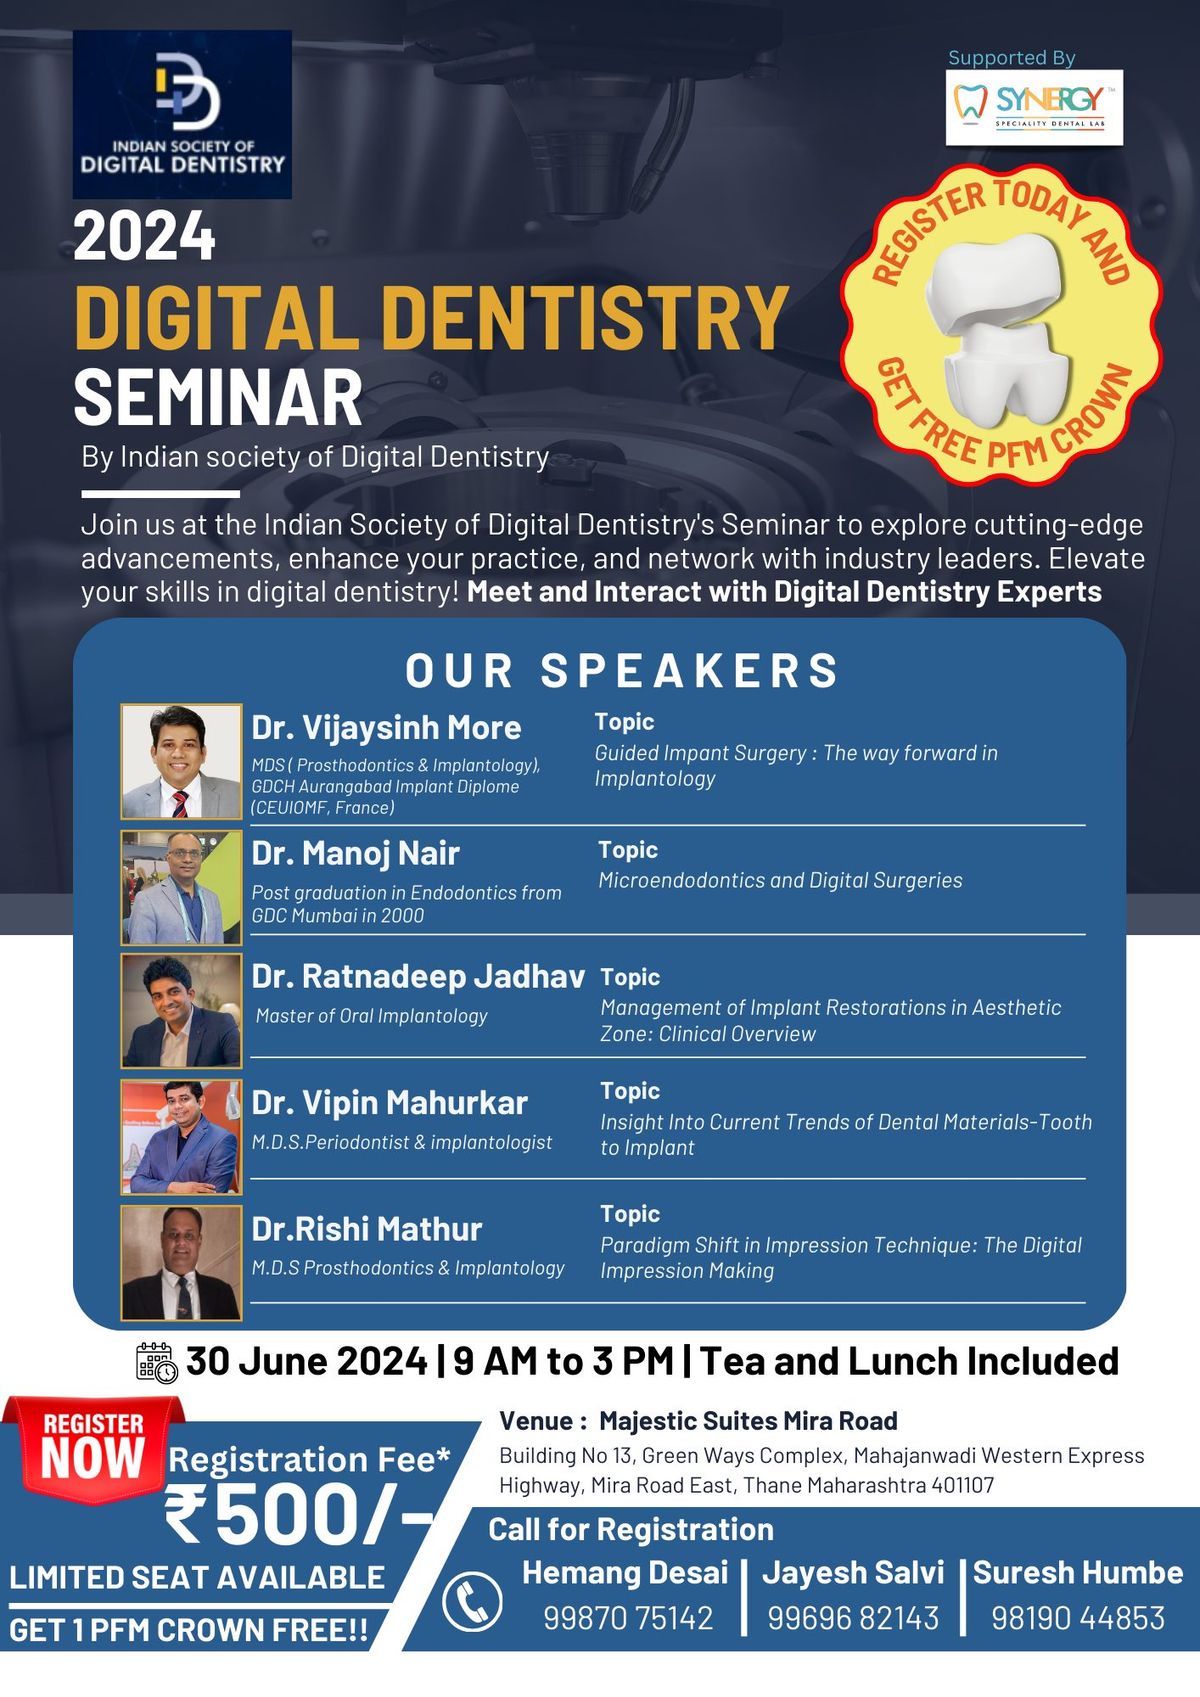 Digital Dentistry Seminar - 2024